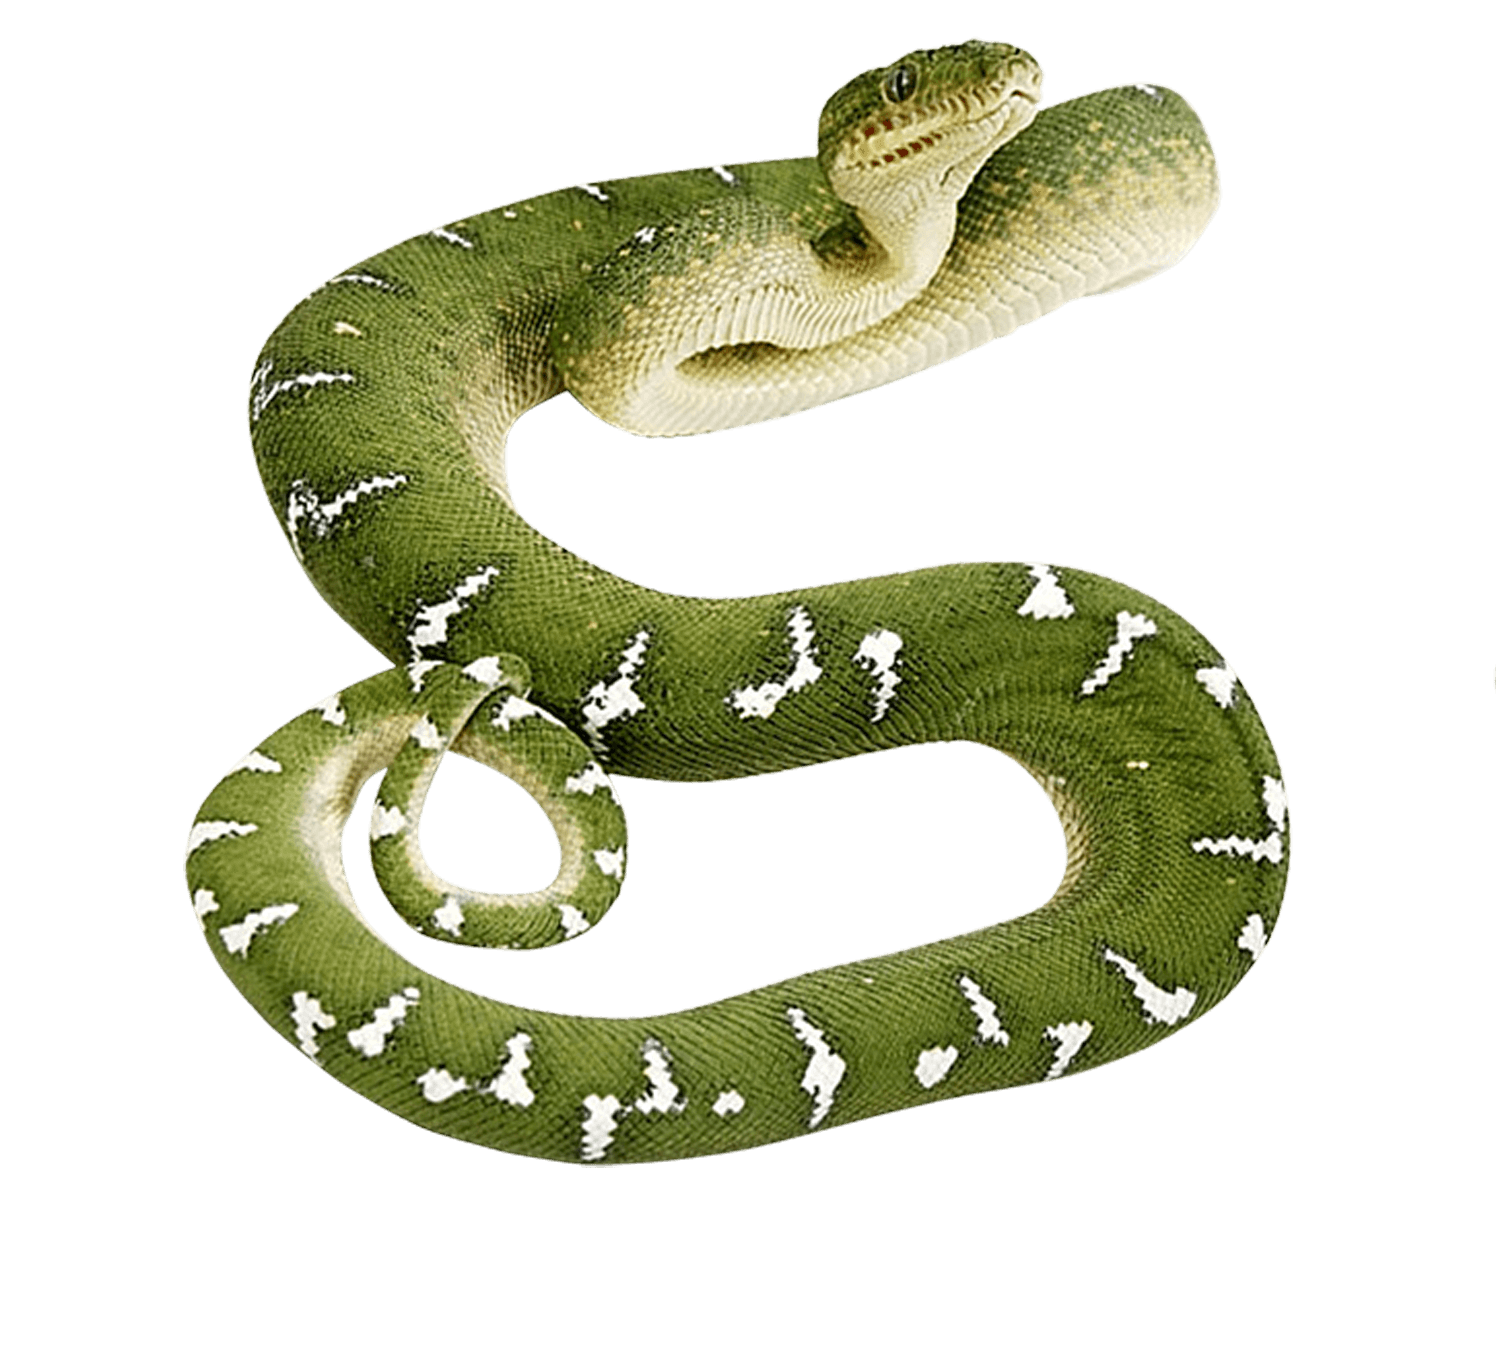 Viper Snake Transparent Image